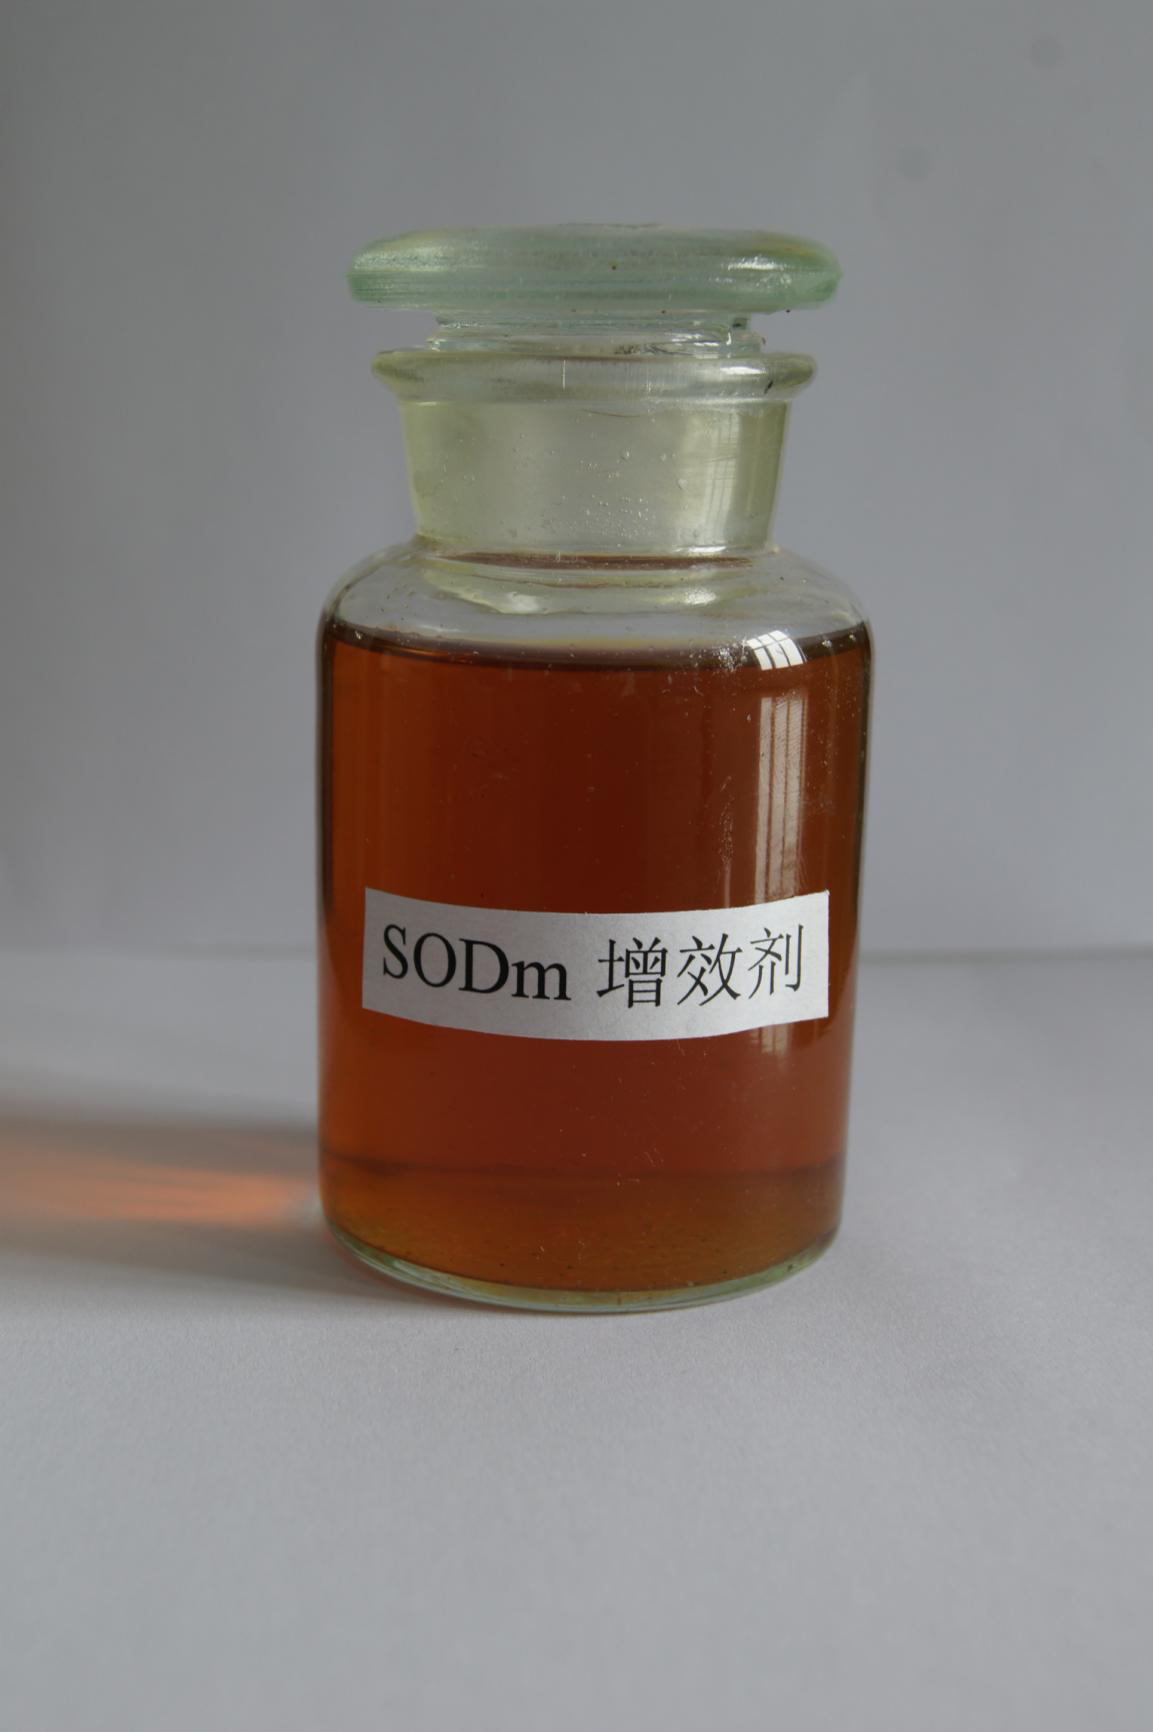 SODm肥料添加剂